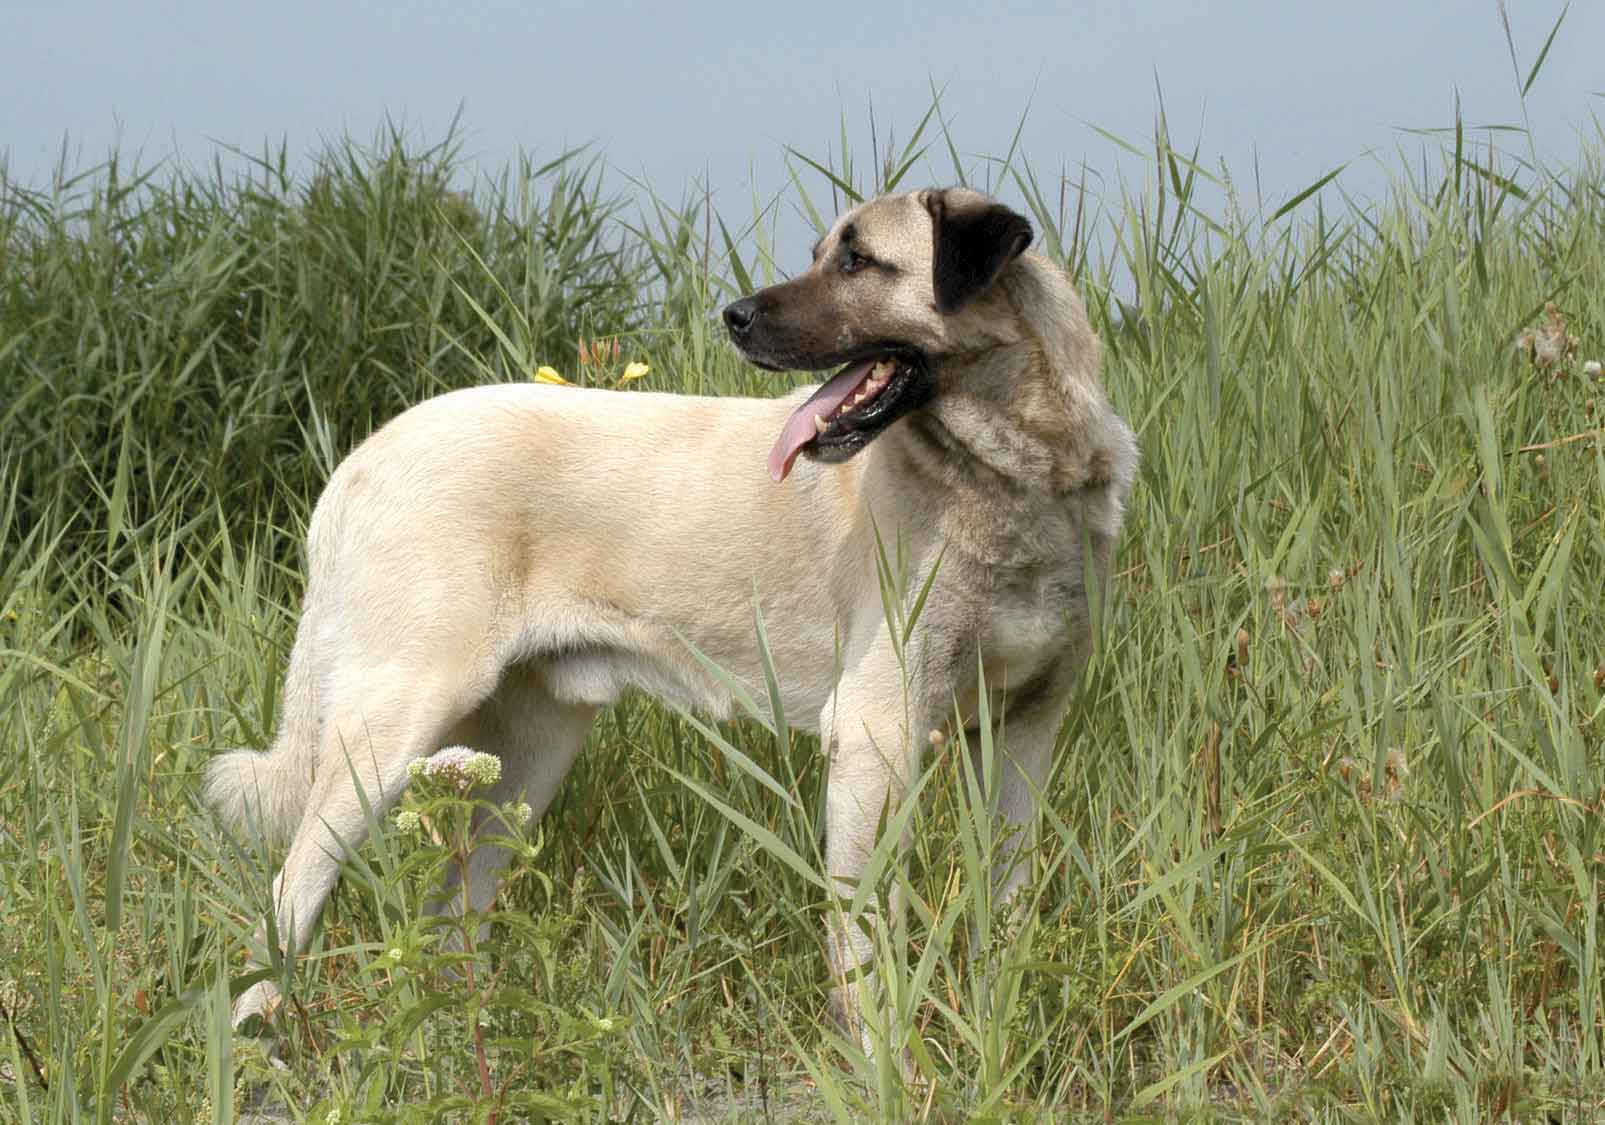 Anatolian Shepherd Dog